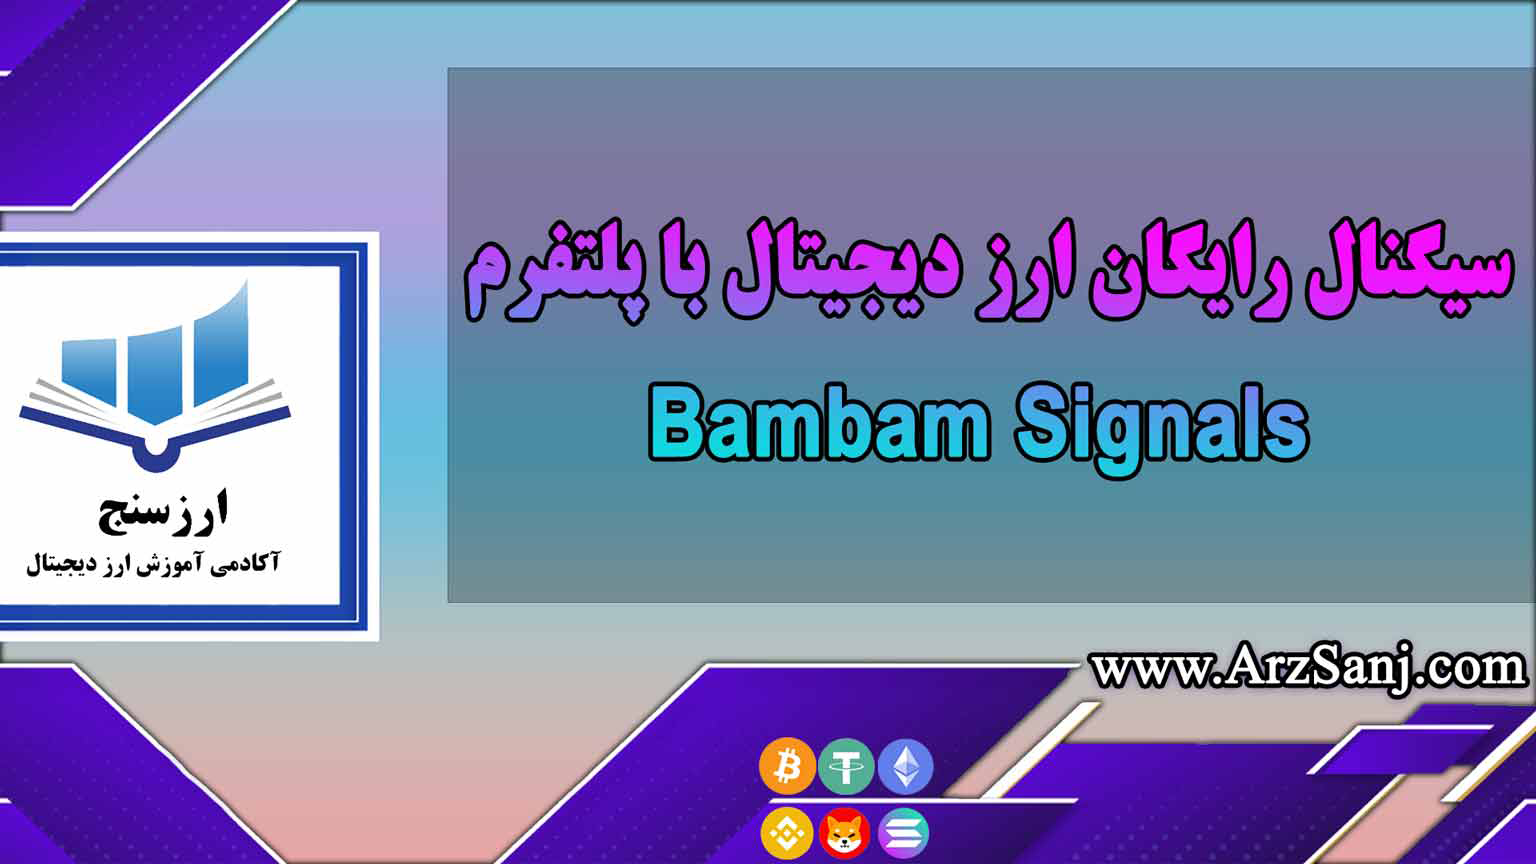 سیگنال رایگان ارز دیجیتال با پلتفرم Bambam Signals